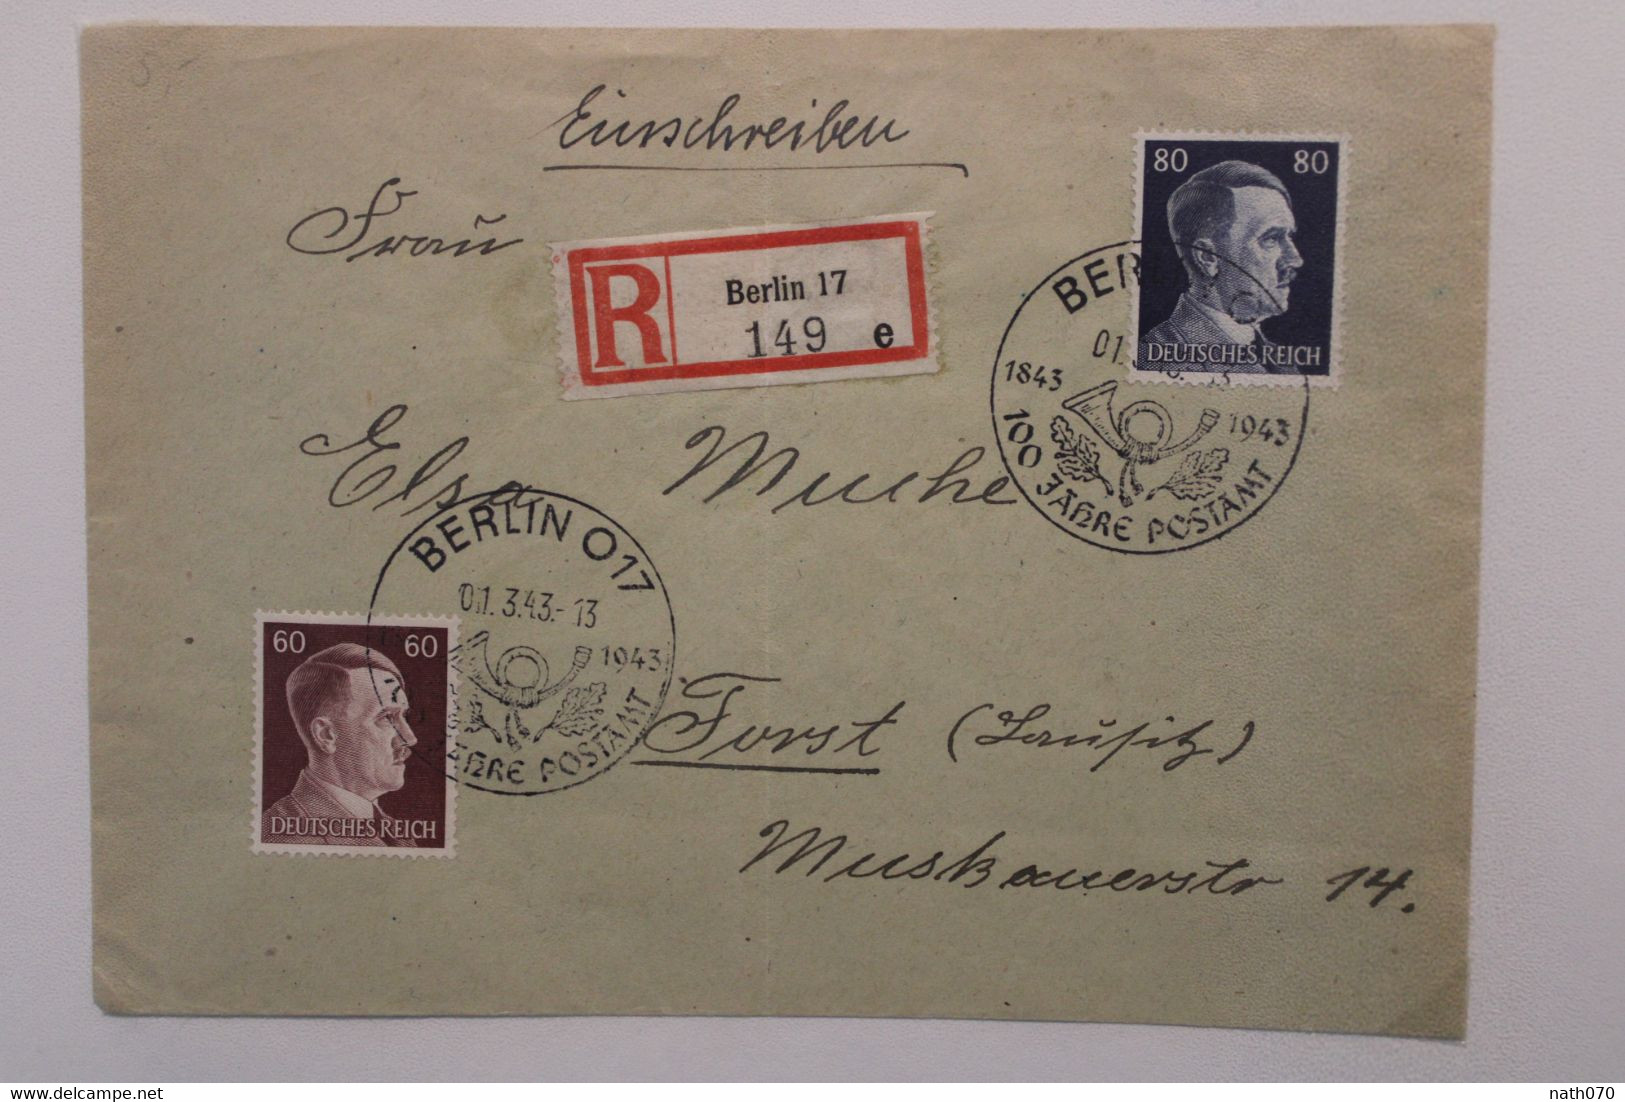 1943 Berlin 100 Jahre Postamt Forst Lausitz Cover Dt Reich Einschreiben Registered Wk2 - Lettres & Documents